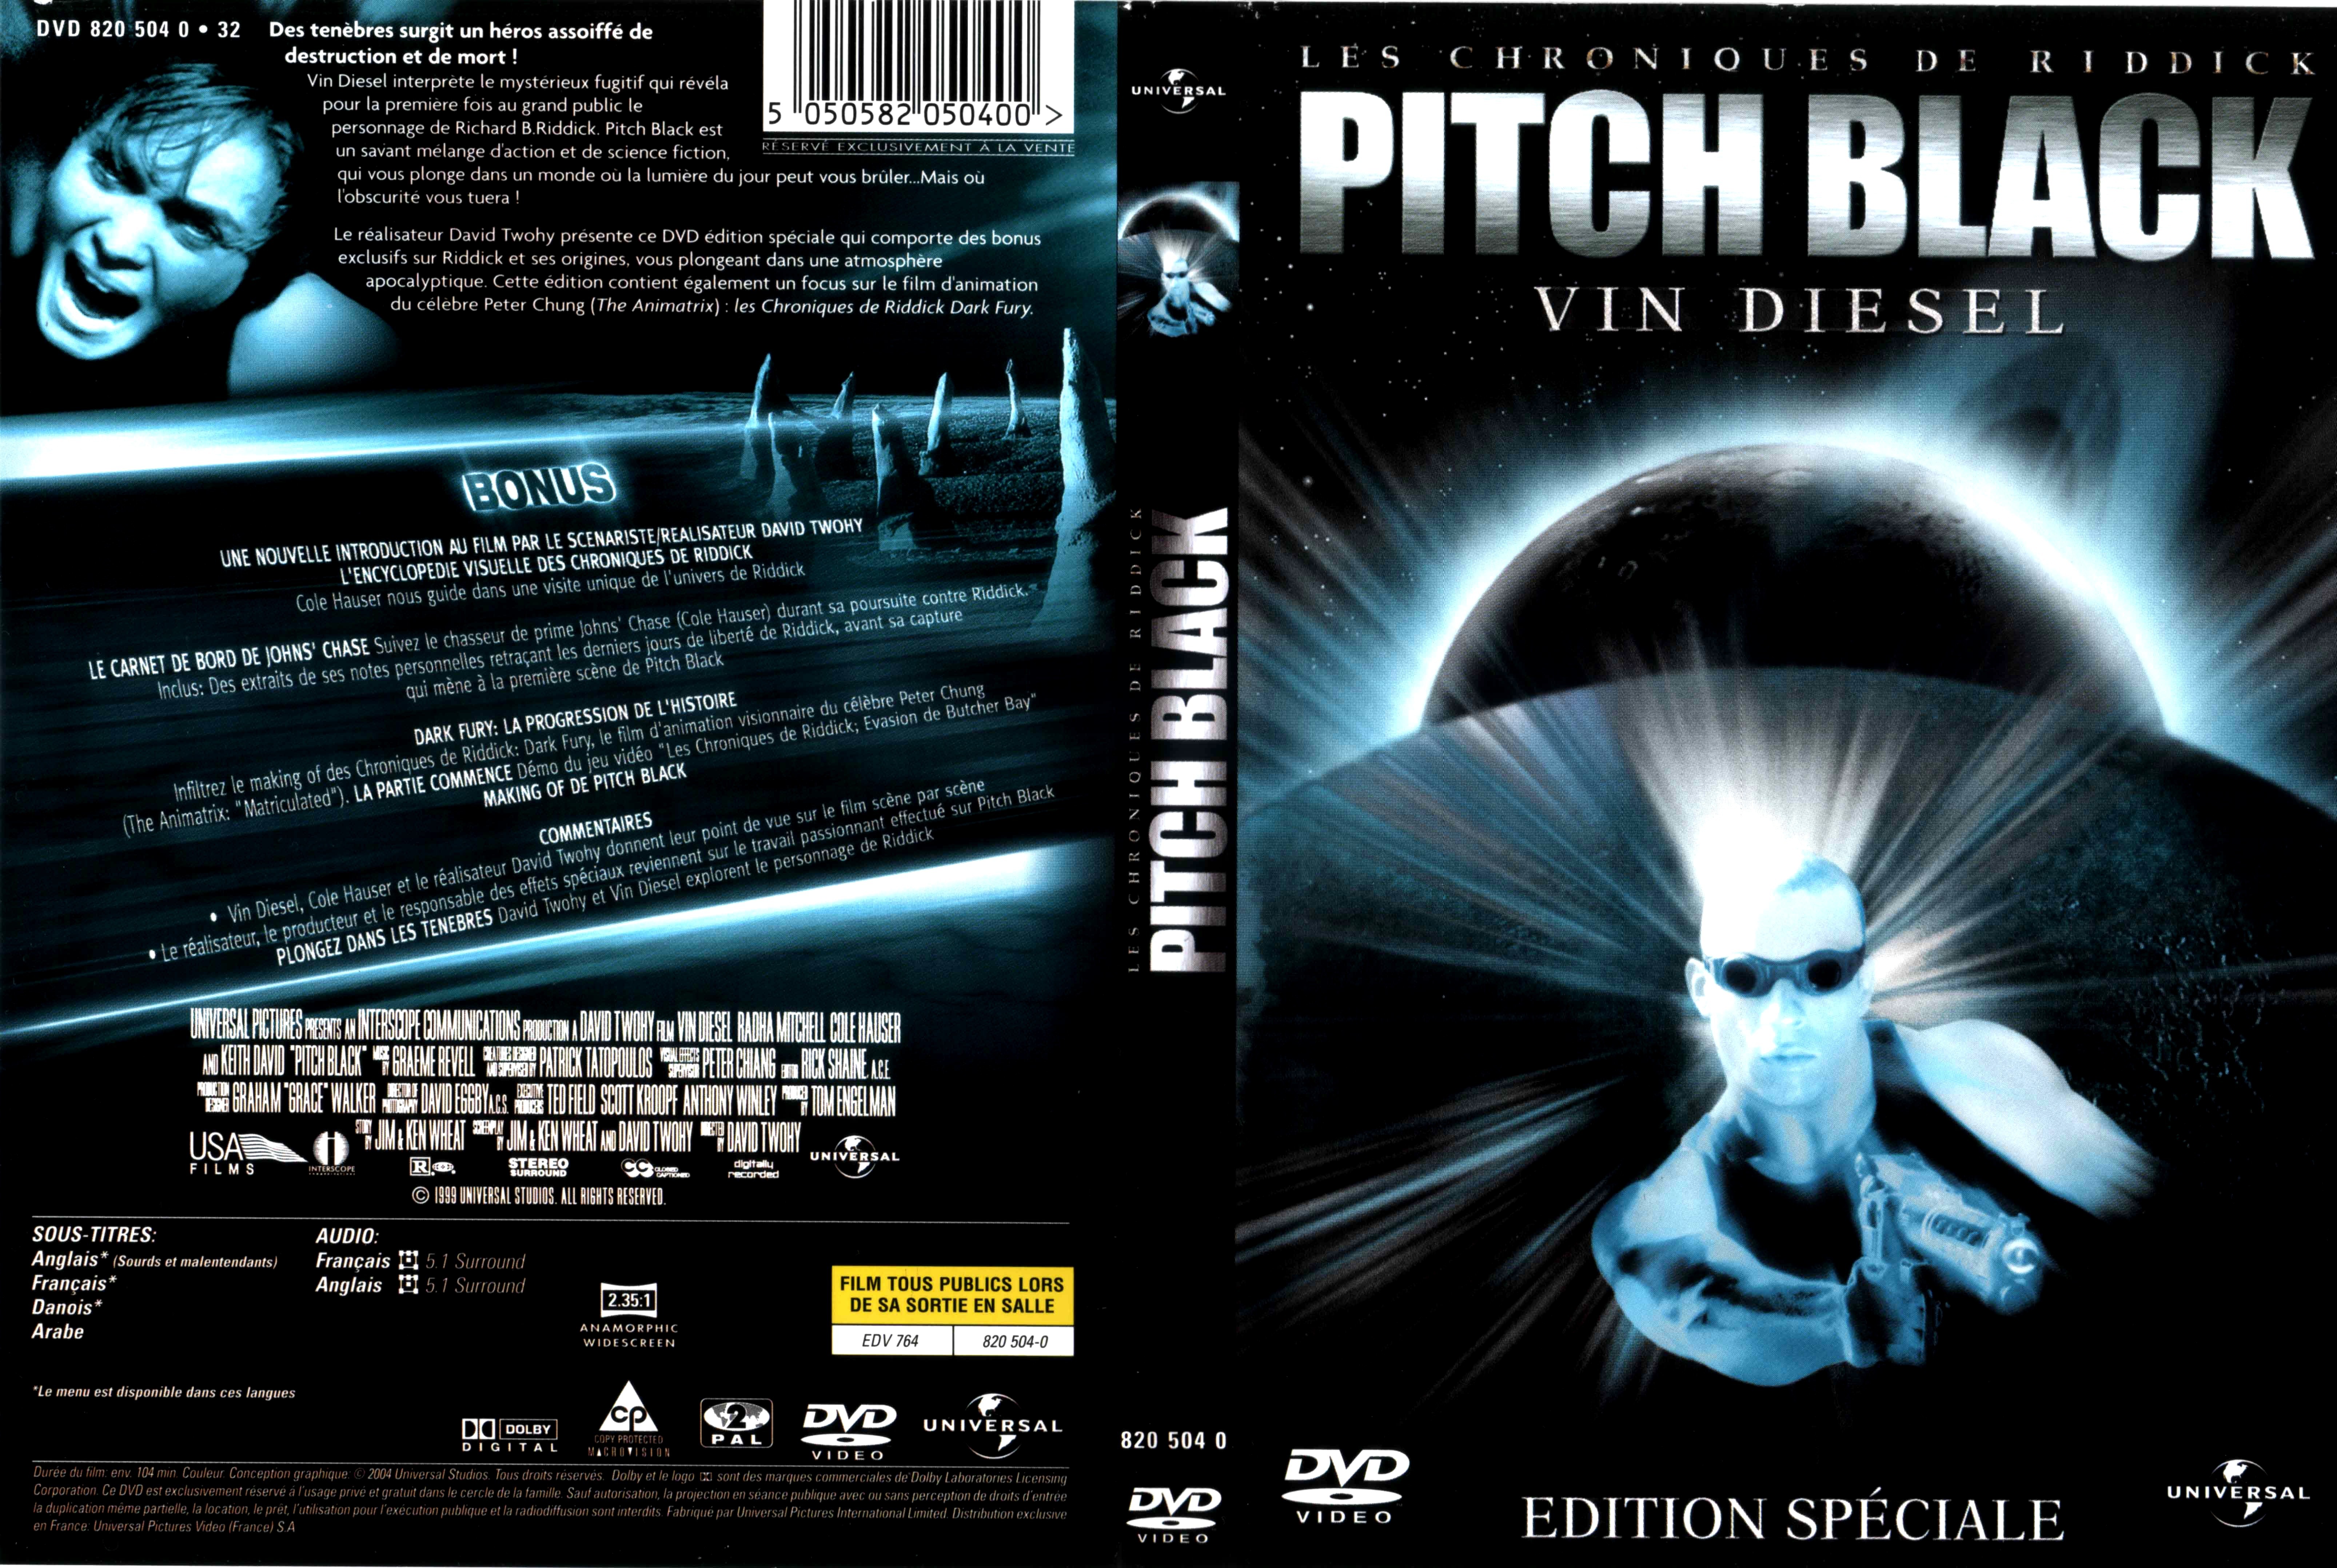 Jaquette DVD Pitch Black v2